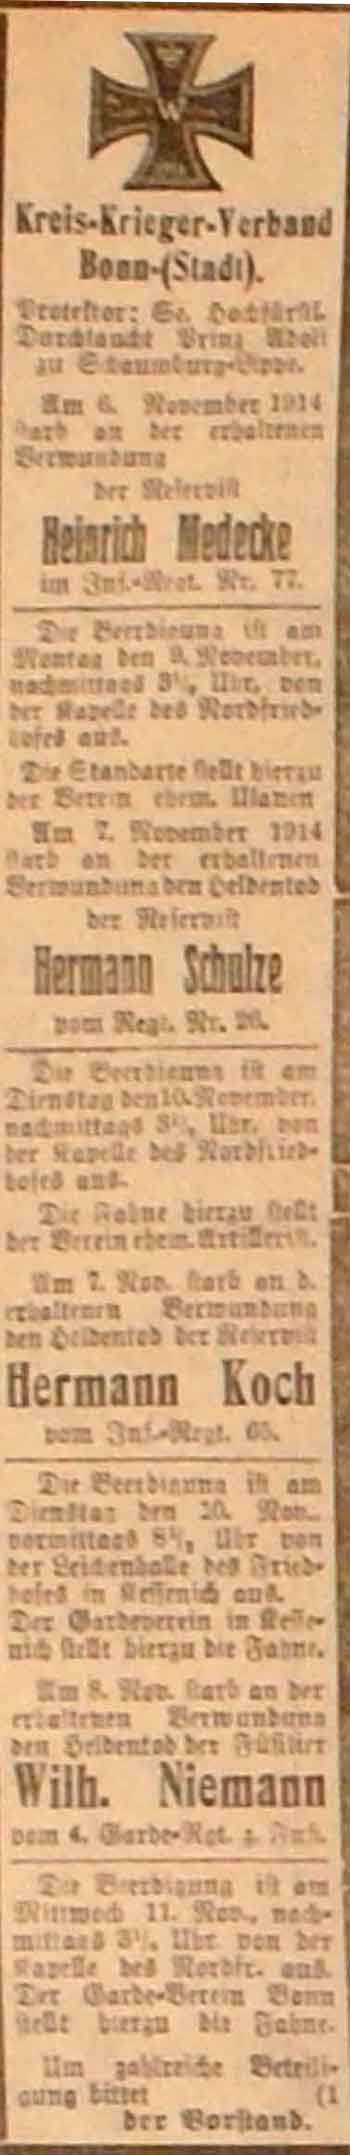 Anzeige im General-Anzeiger vom 9. November 1914